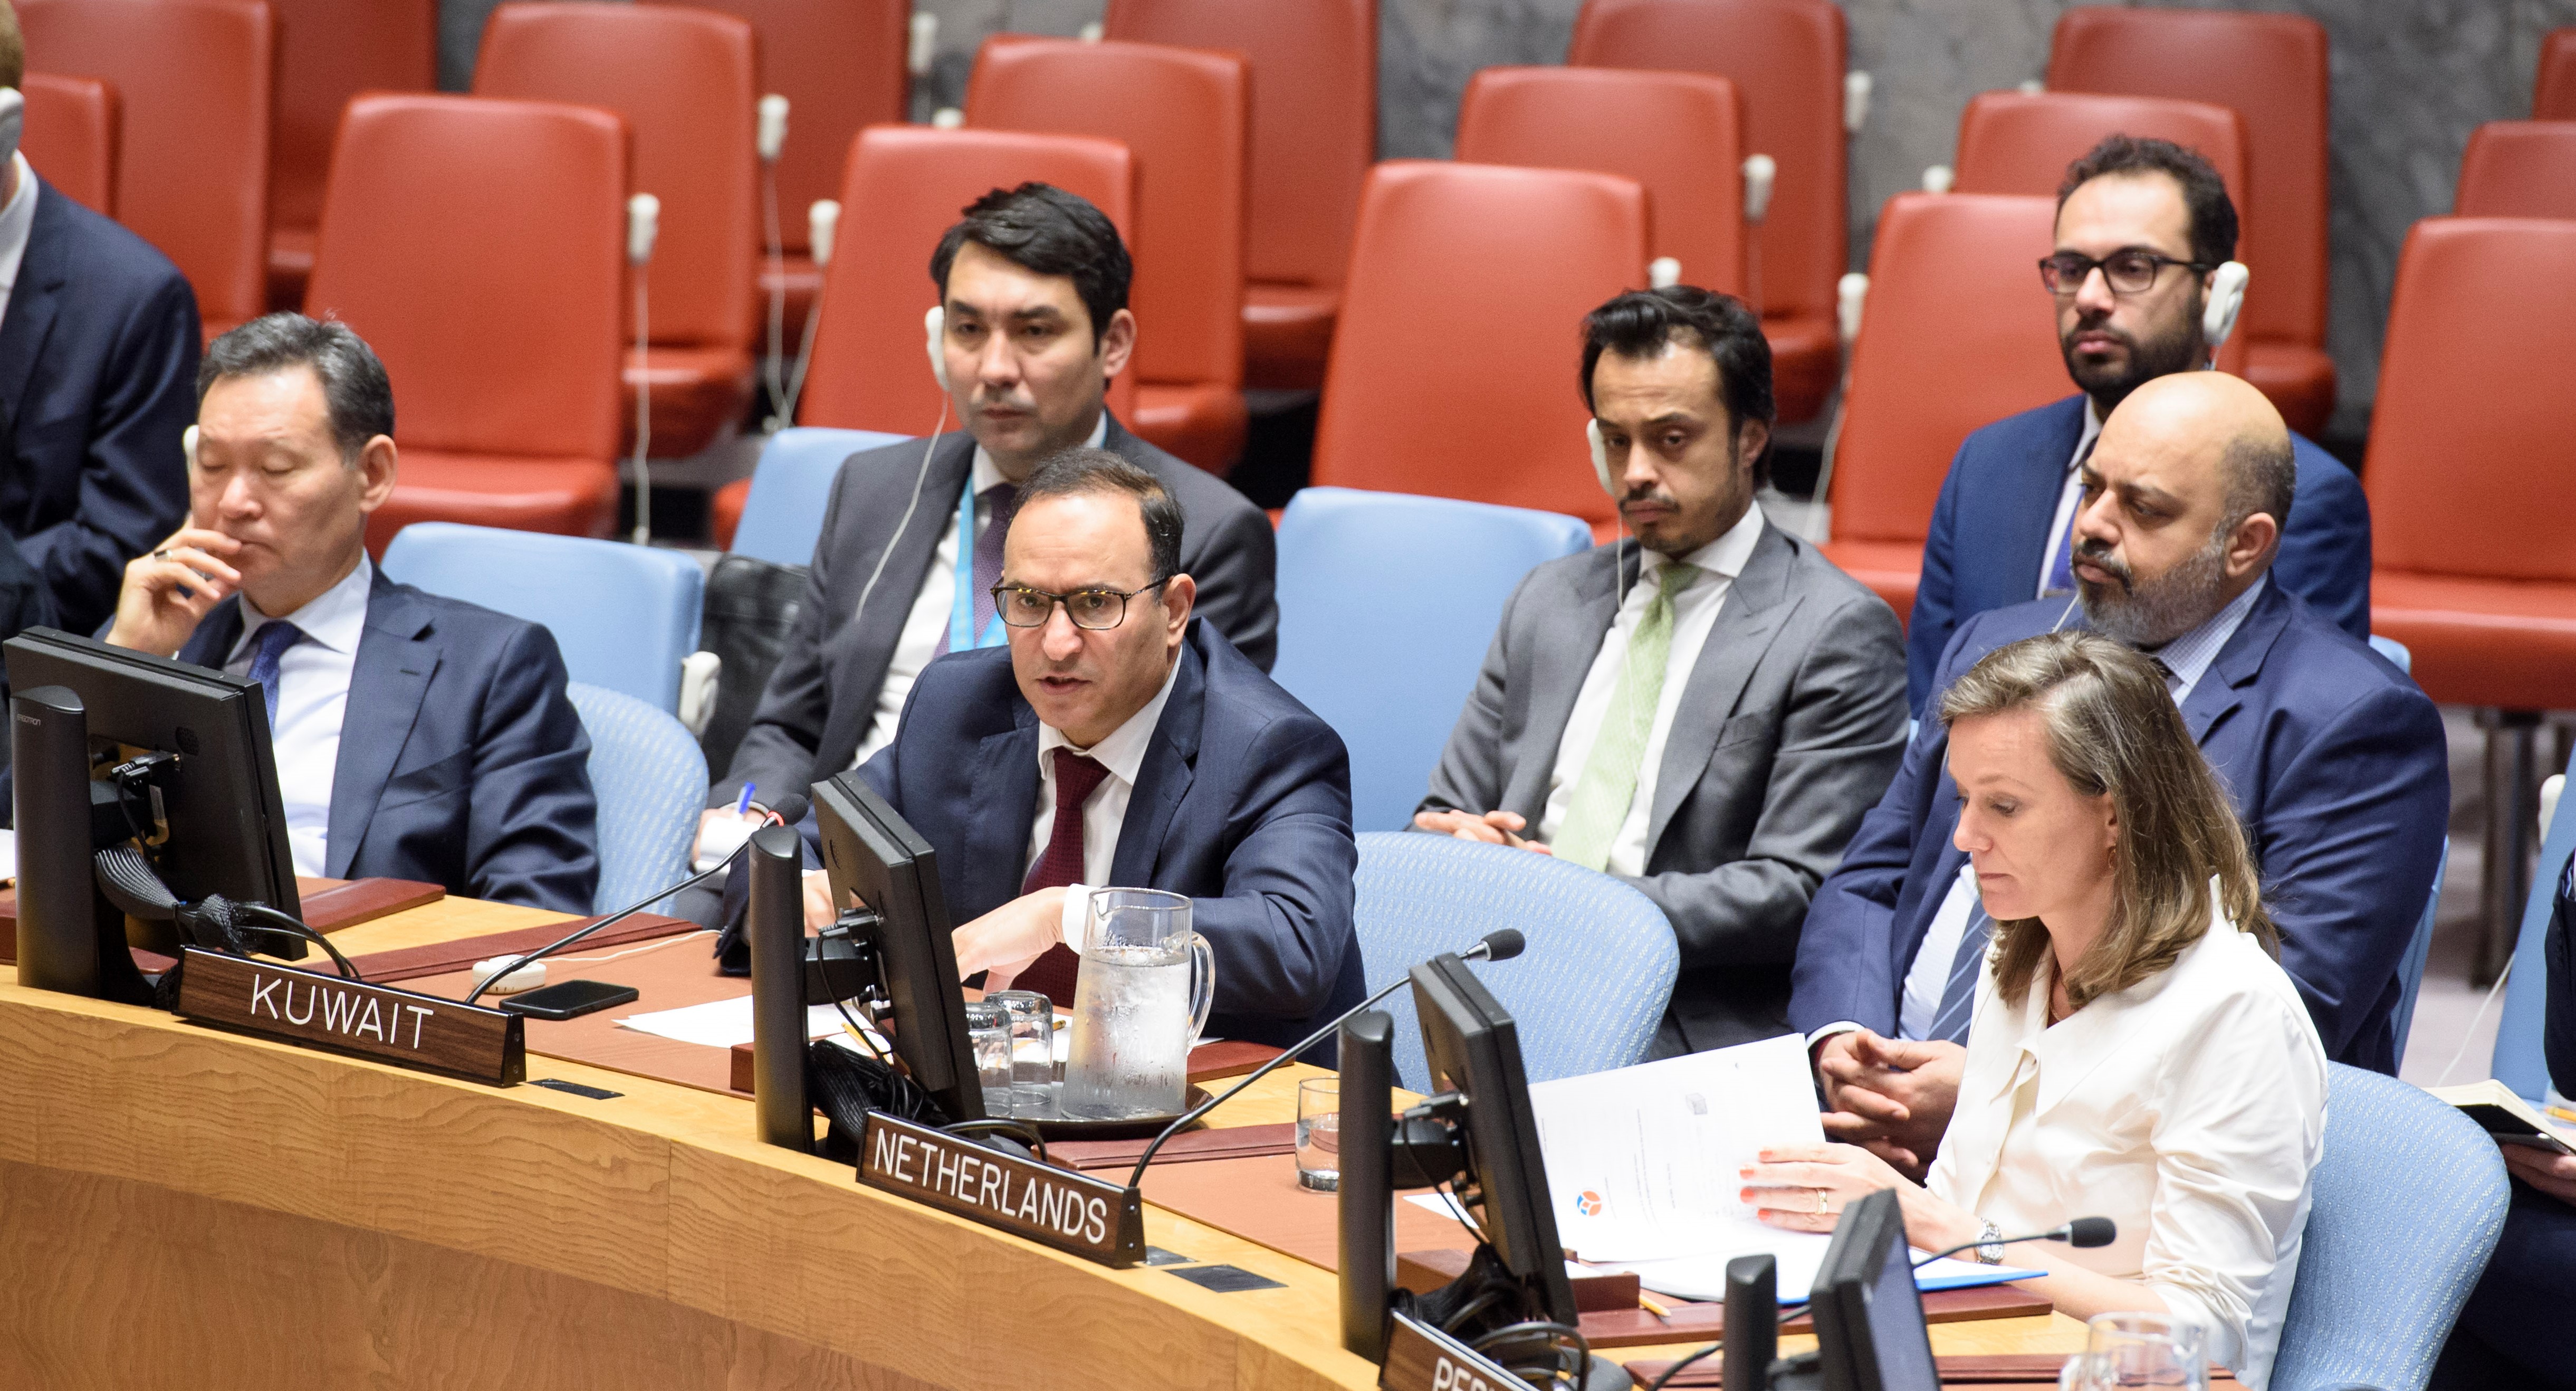 head of Kuwait's permanent mission to the UN Ambassador Mansour Al-Otaibi